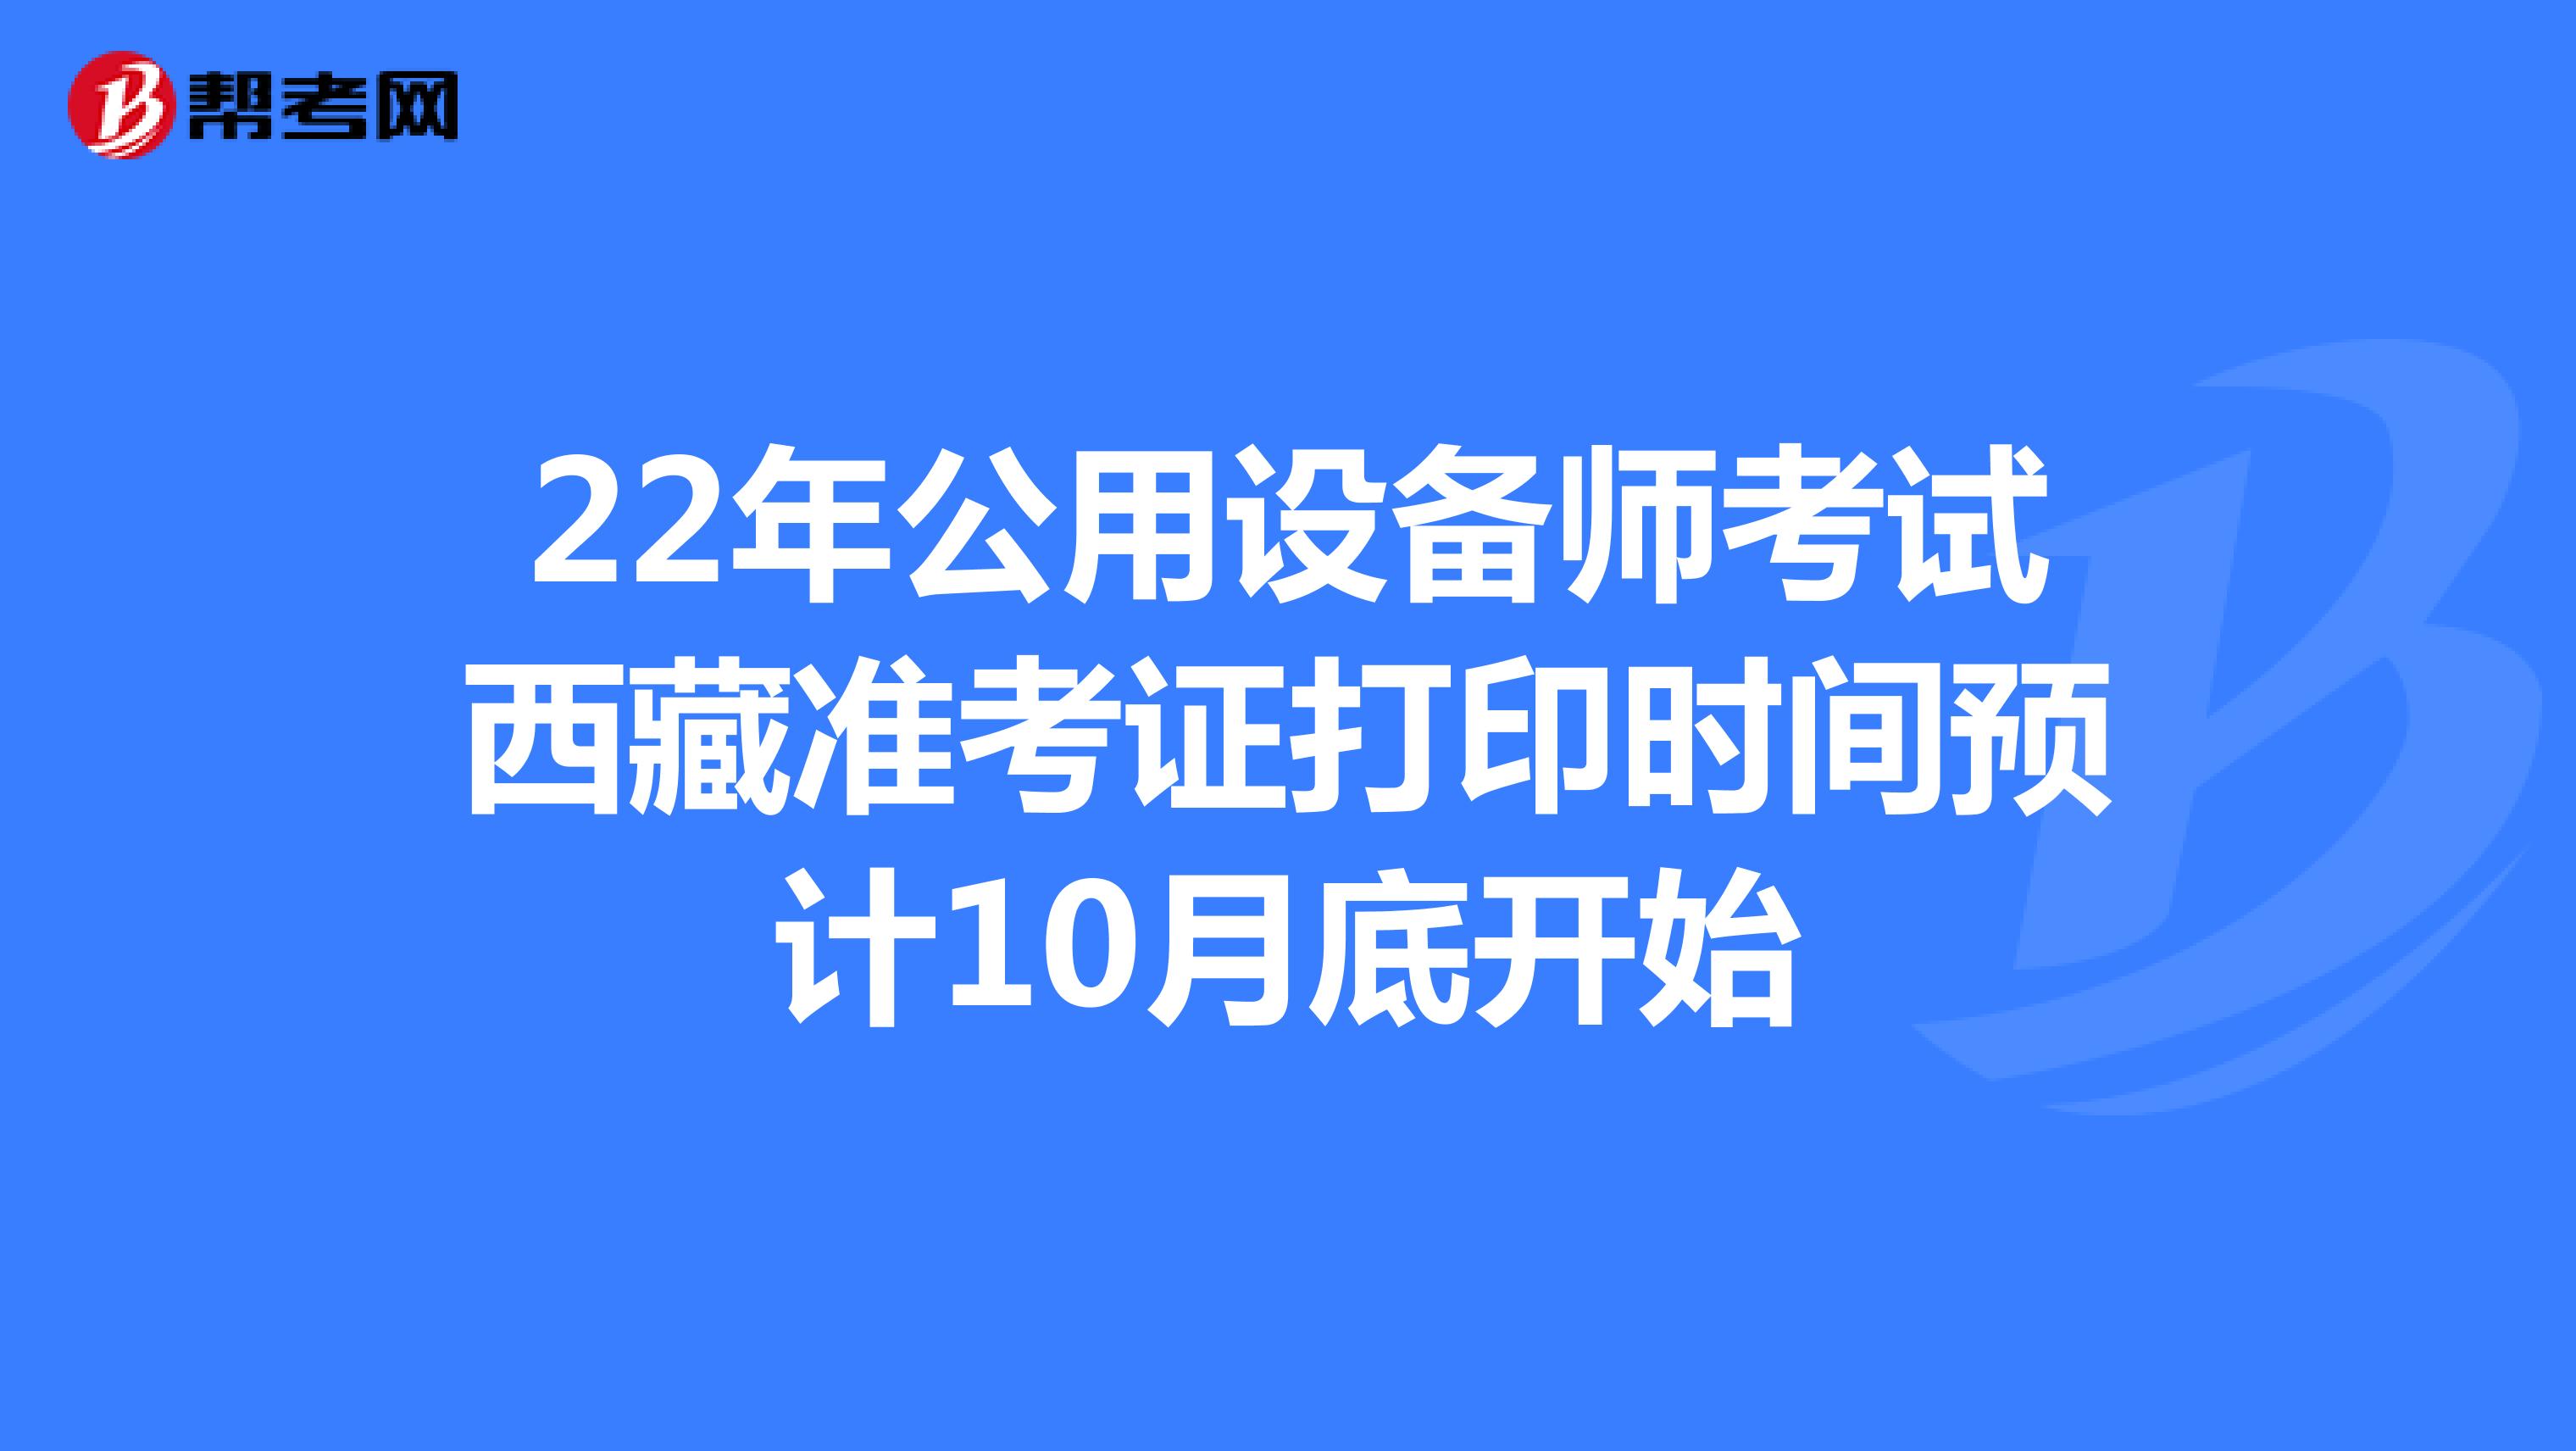 22年公用设备师考试西藏准考证打印时间预计10月底开始